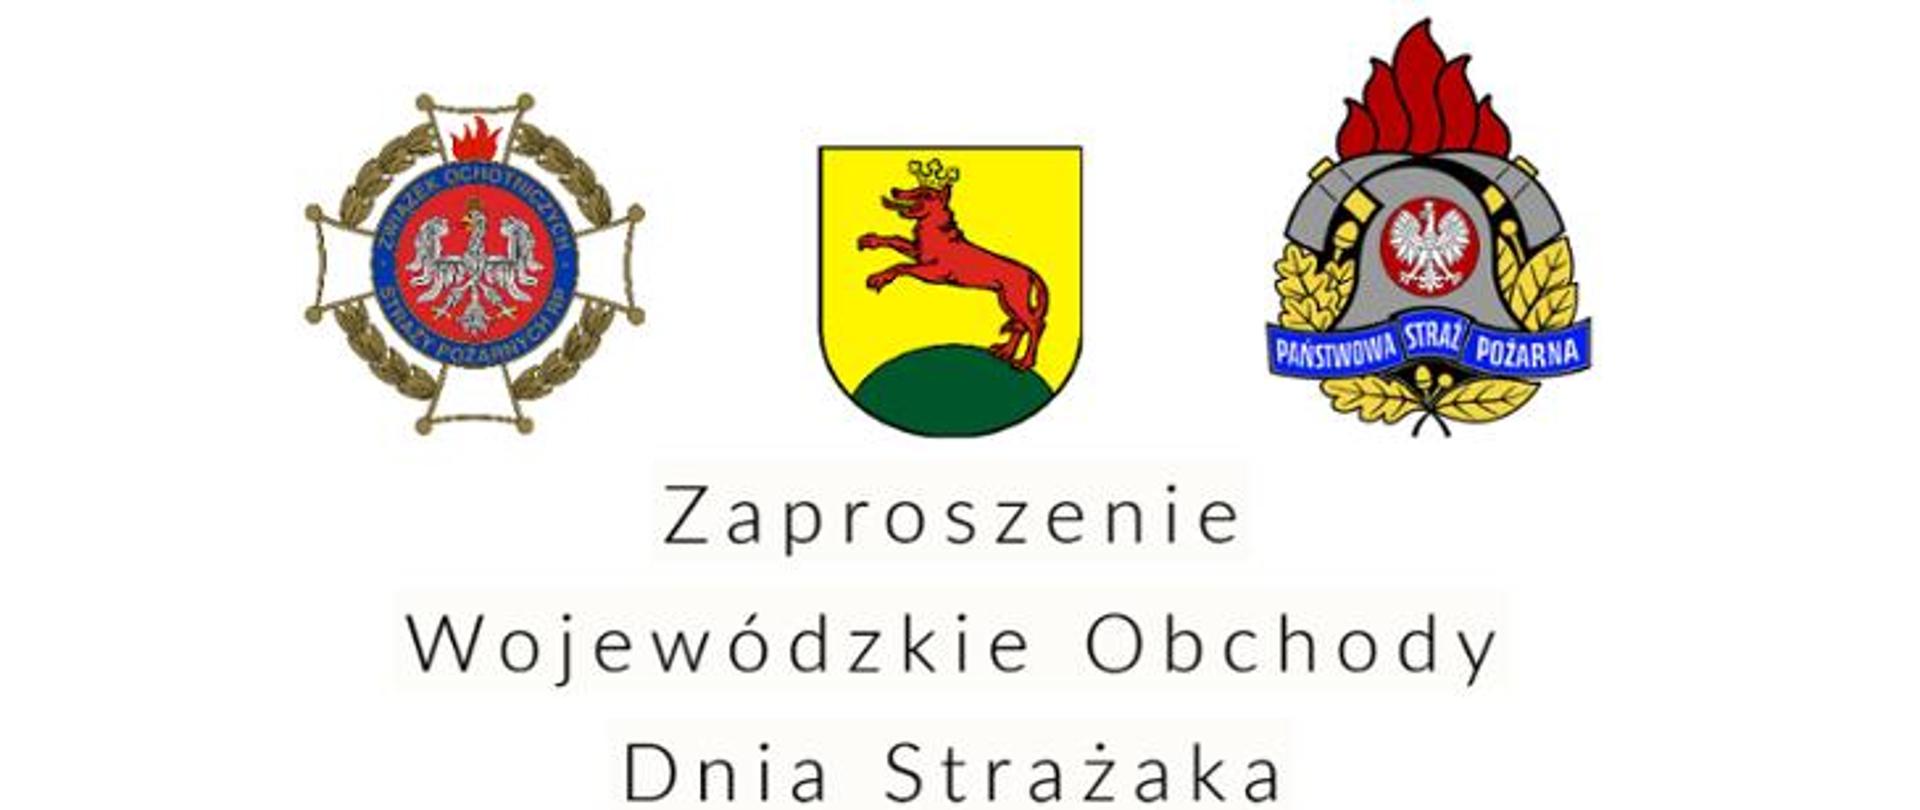 Zaproszenie na Wojewódzkie Obchody Dnia Strażaka w Łobzie